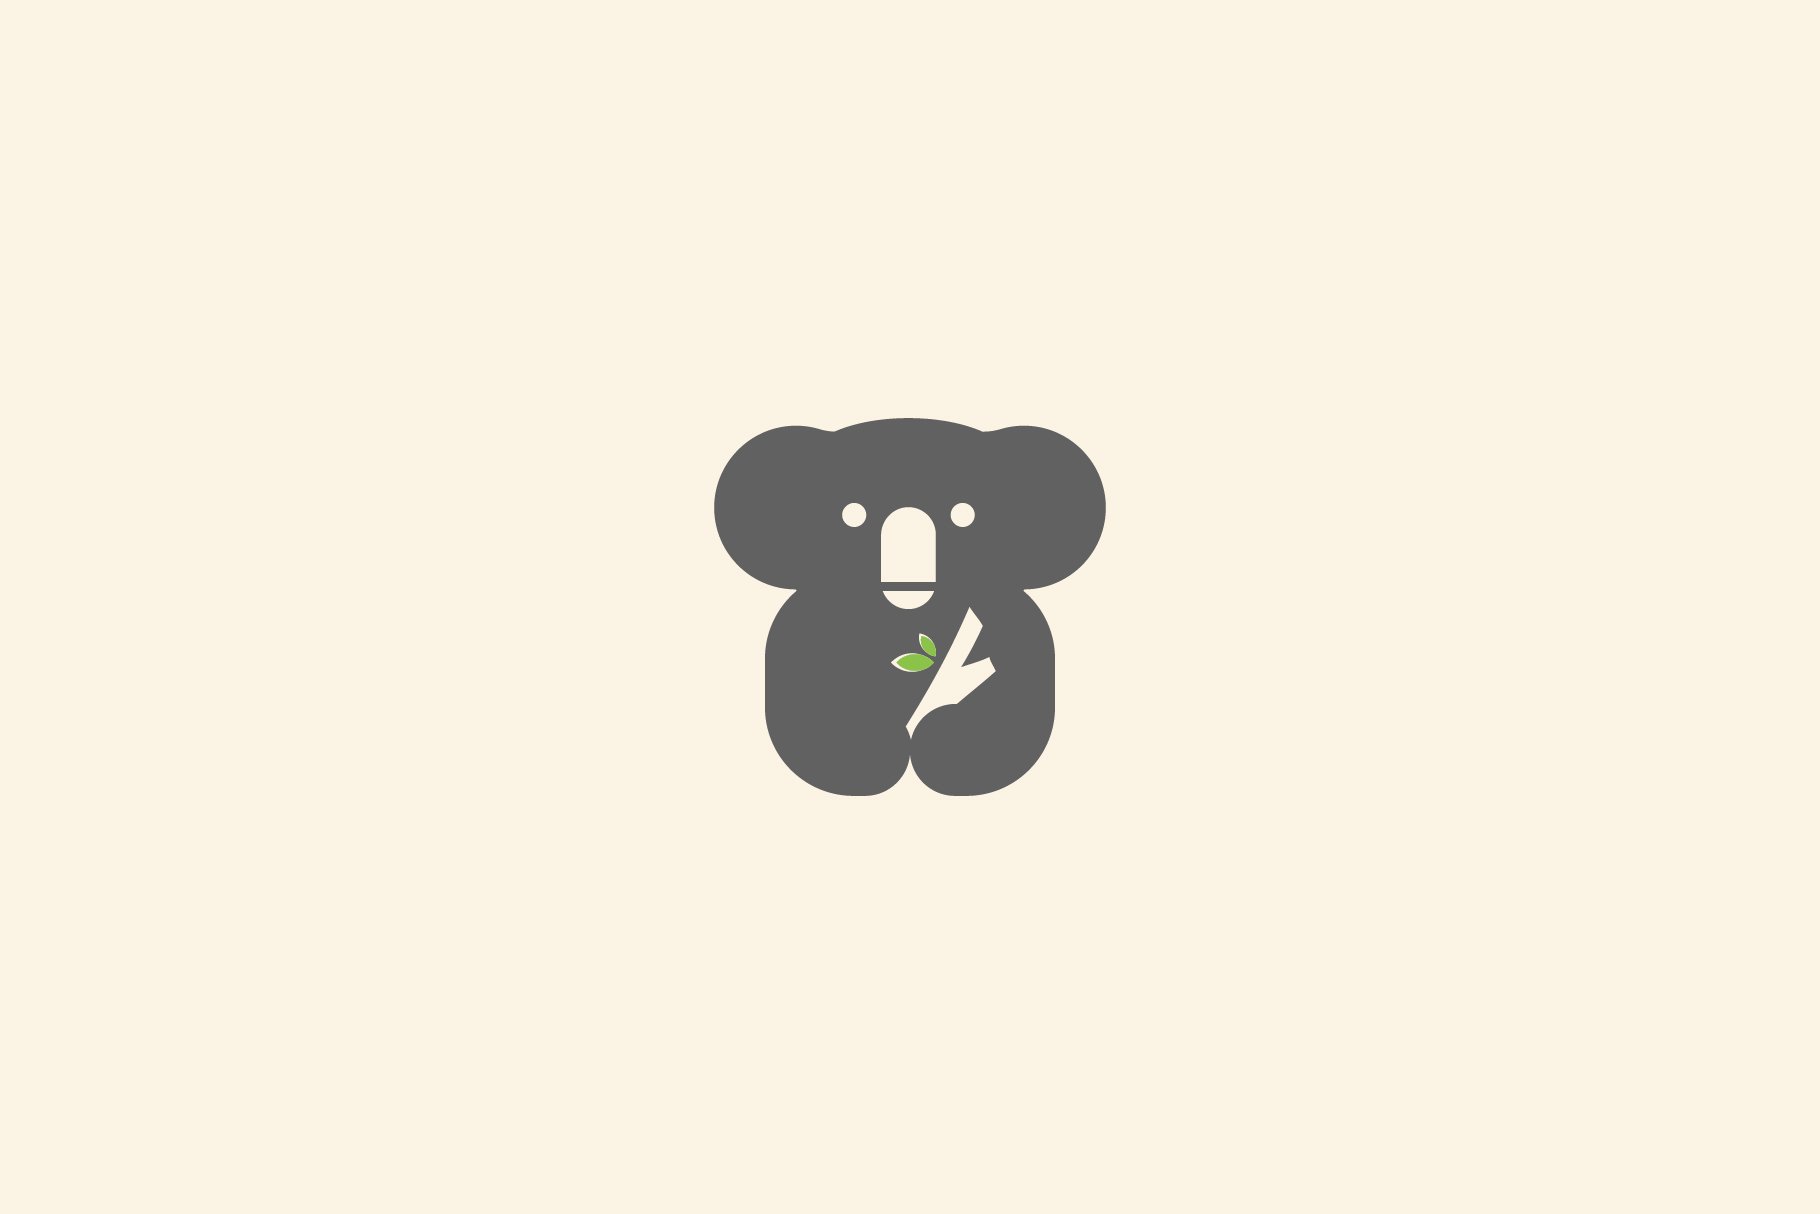 Koala logo icon design vector cover image.